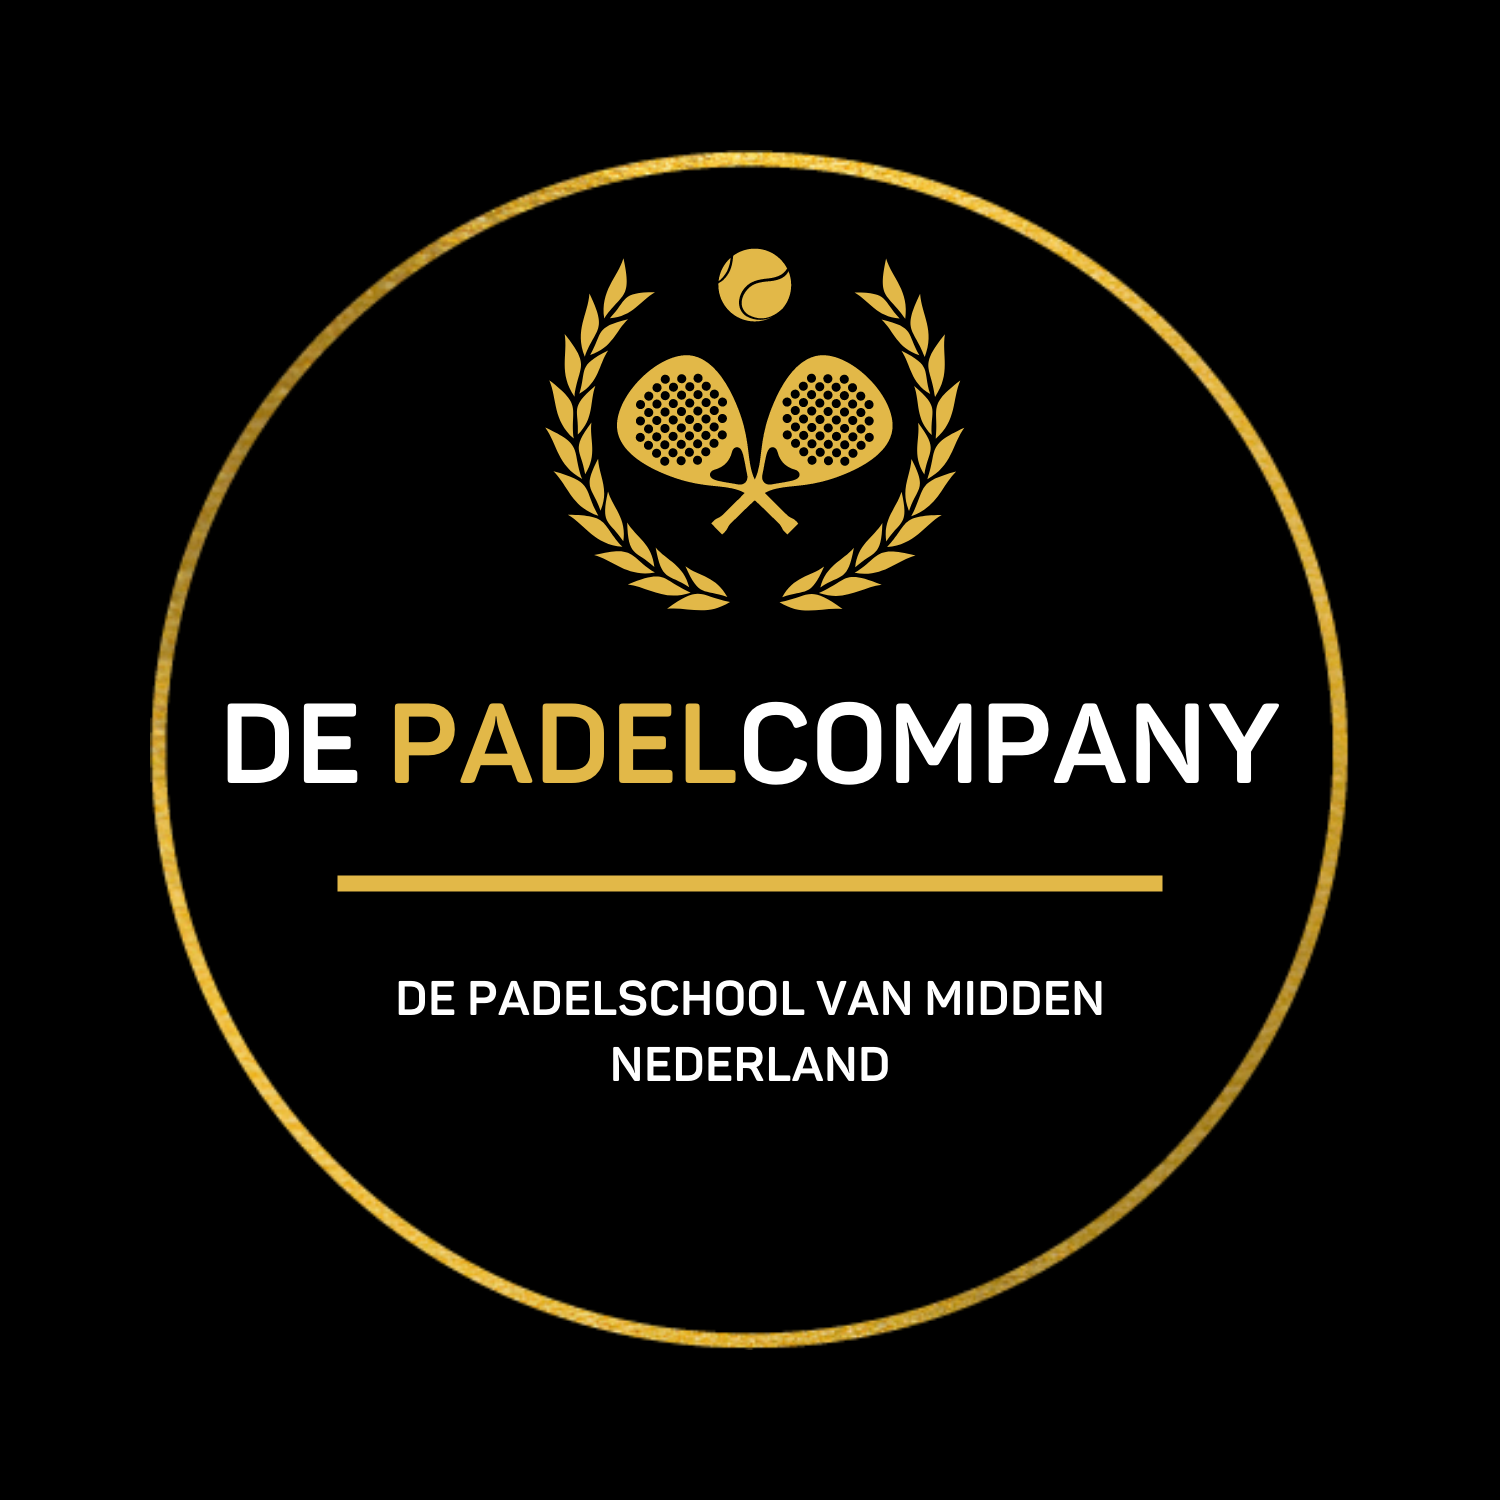 Logo De Padelcompany